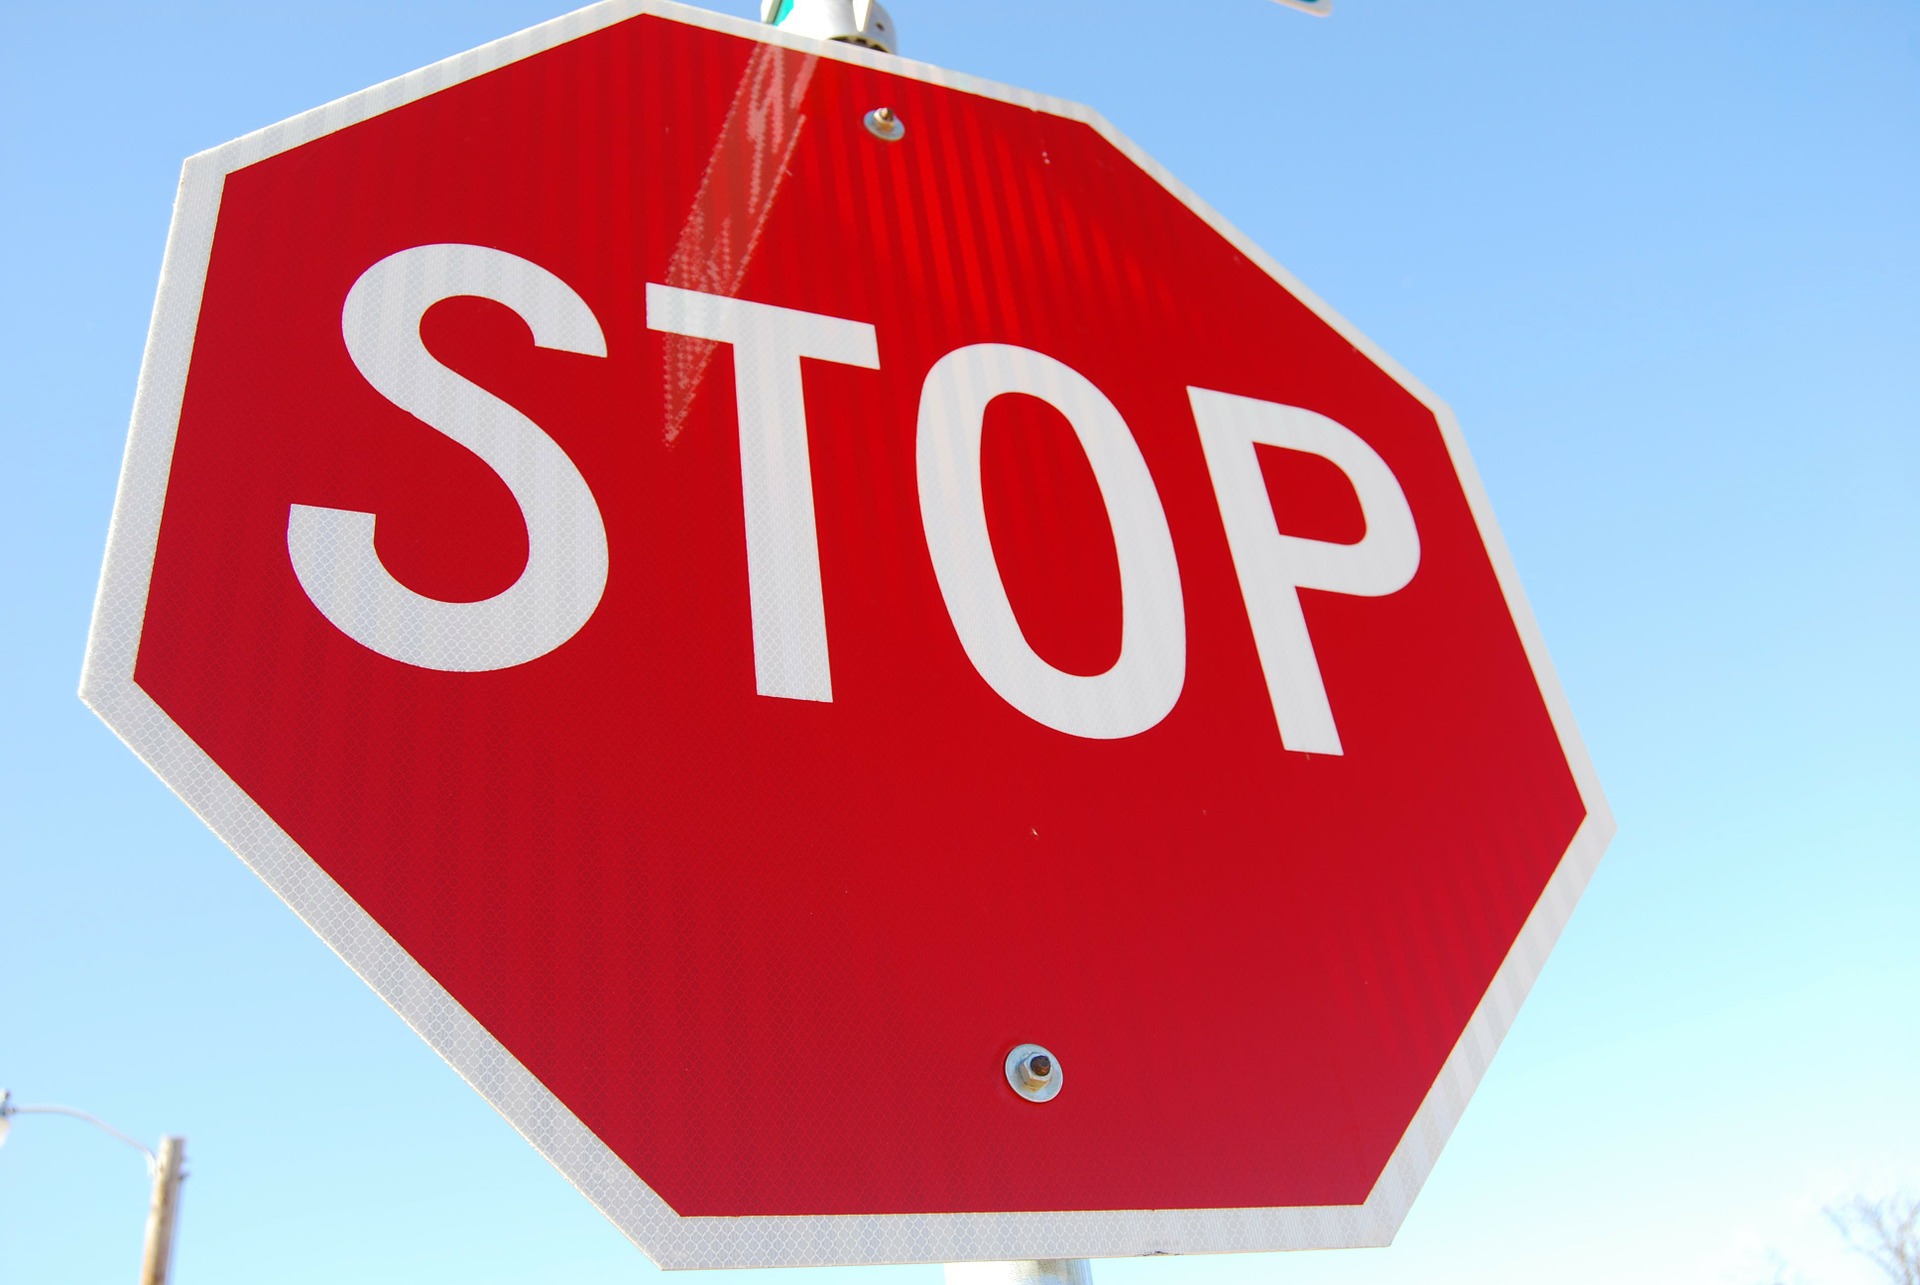 STOP [pixabay.com]